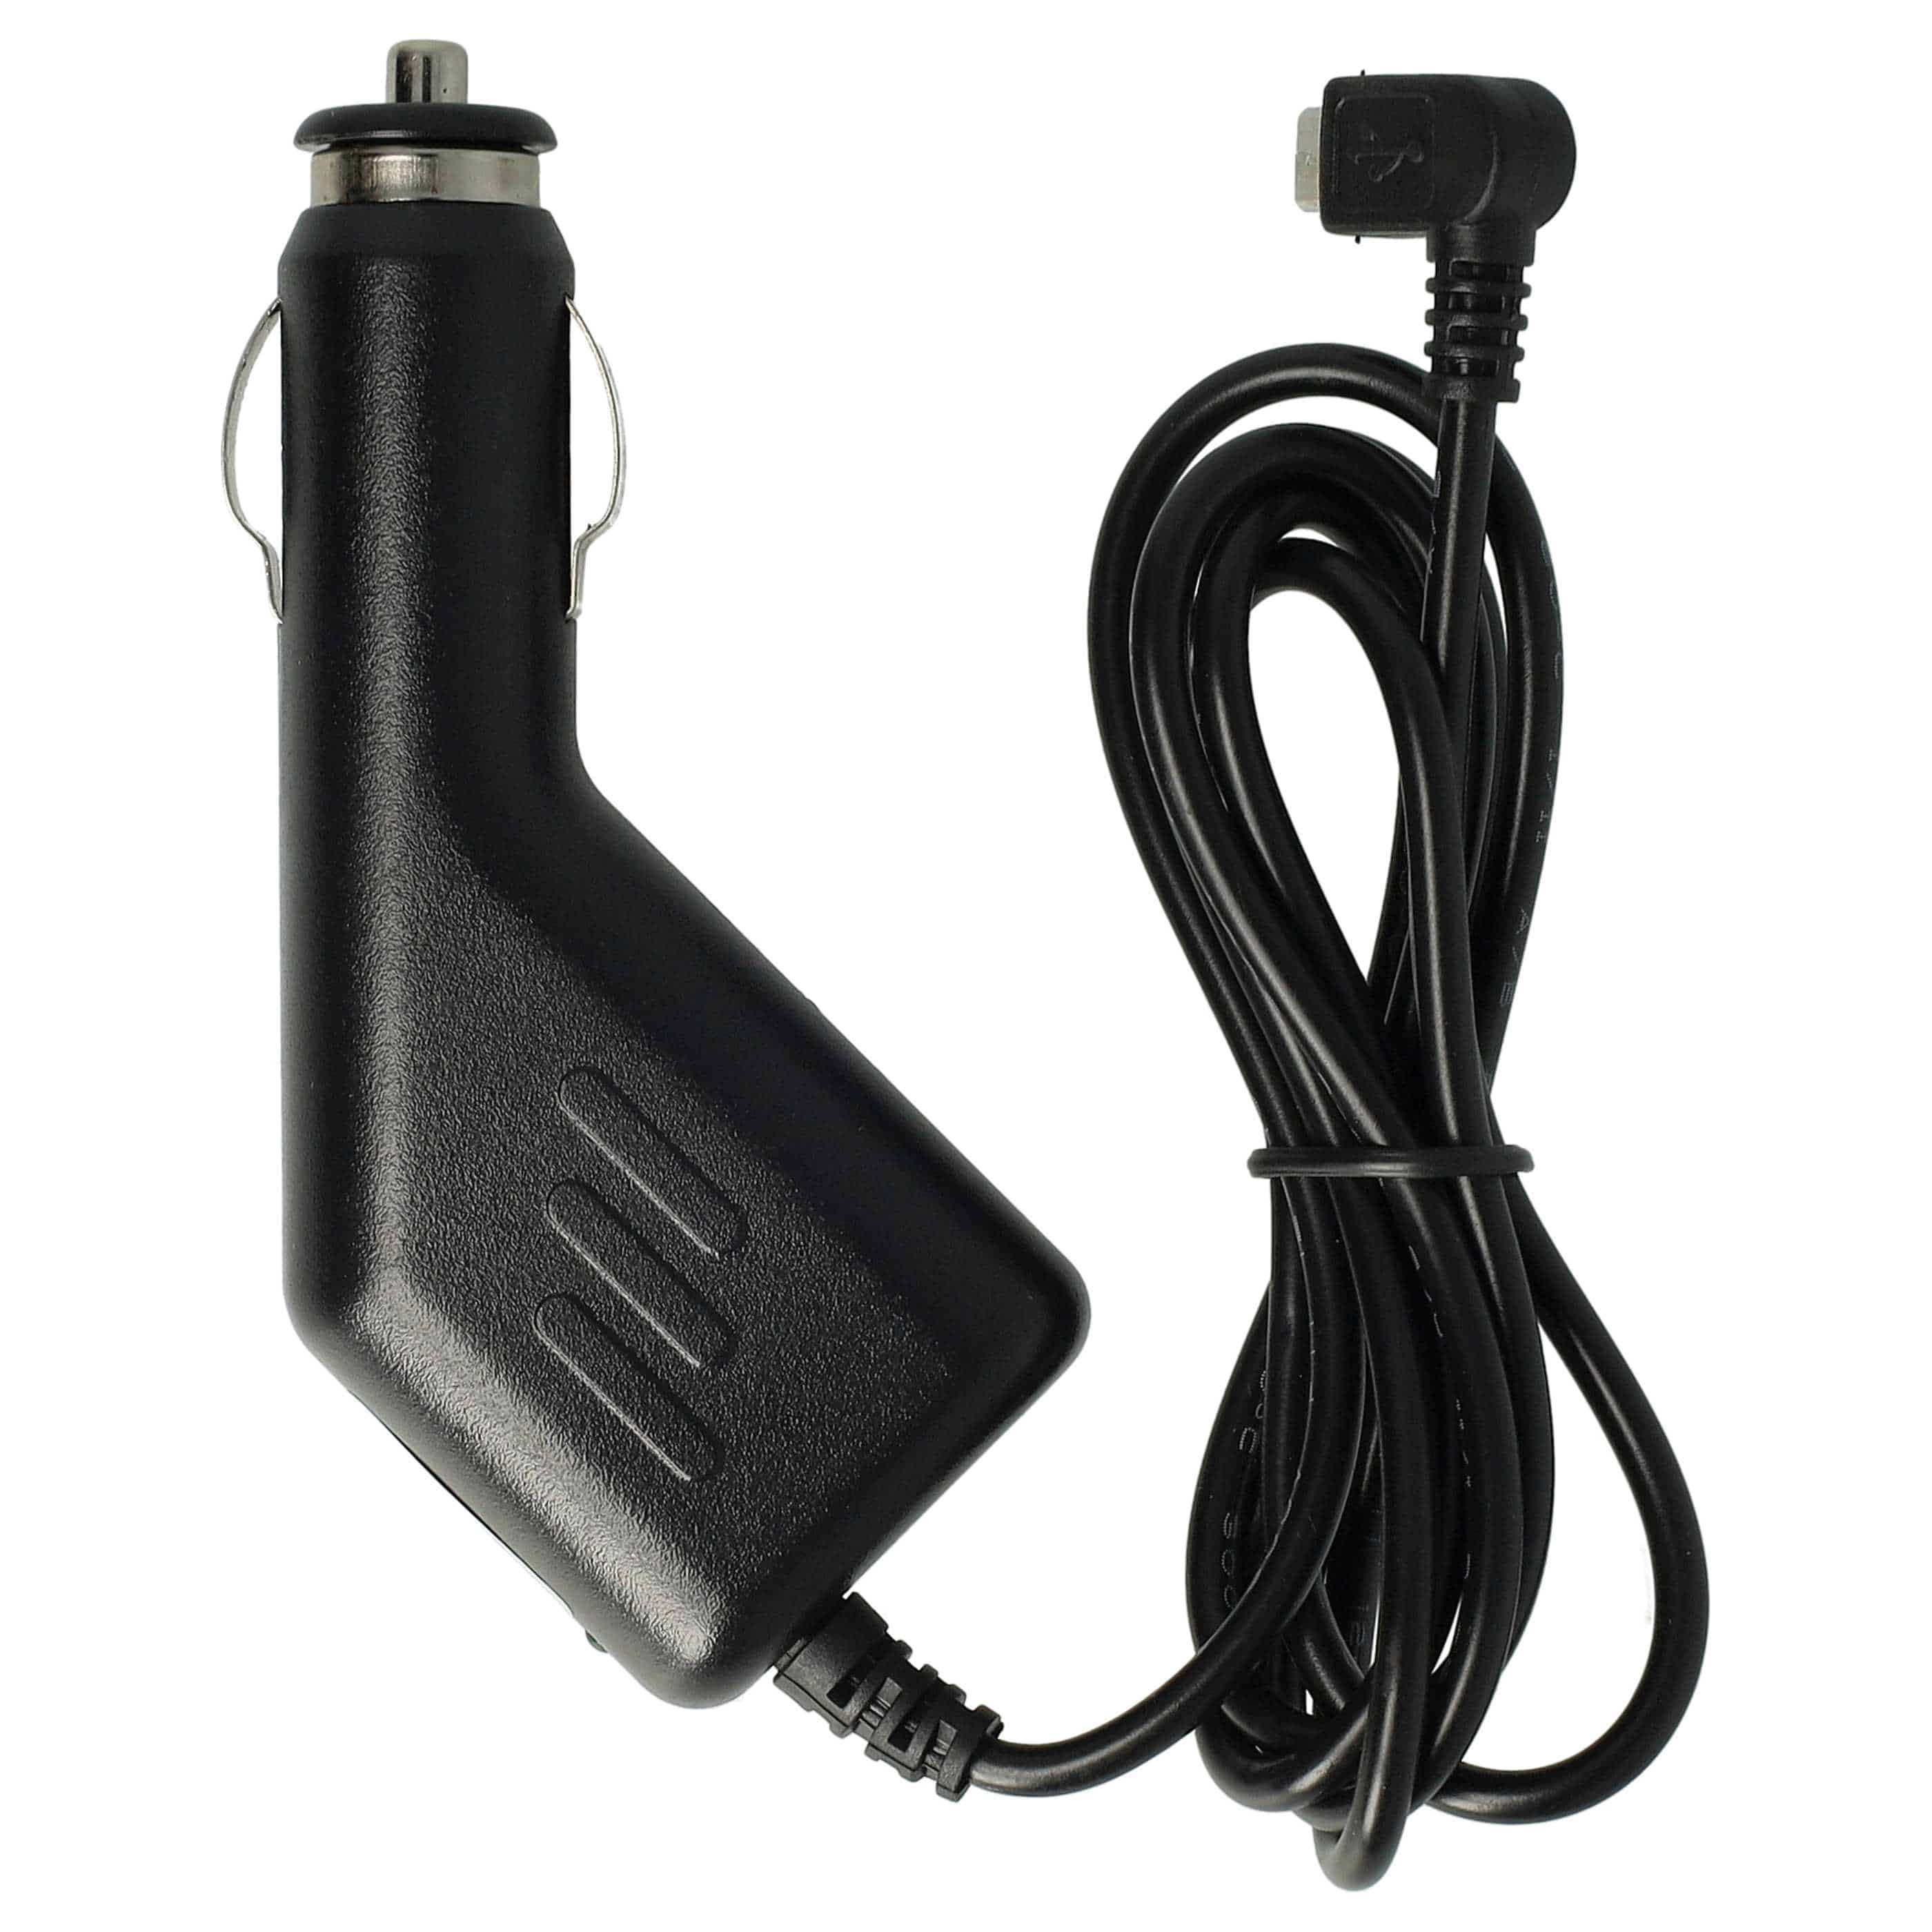 Cargador coche micro USB 1,0 A para smartphone, GPS Olympia, etc. - Cable de carga, clavija 90°